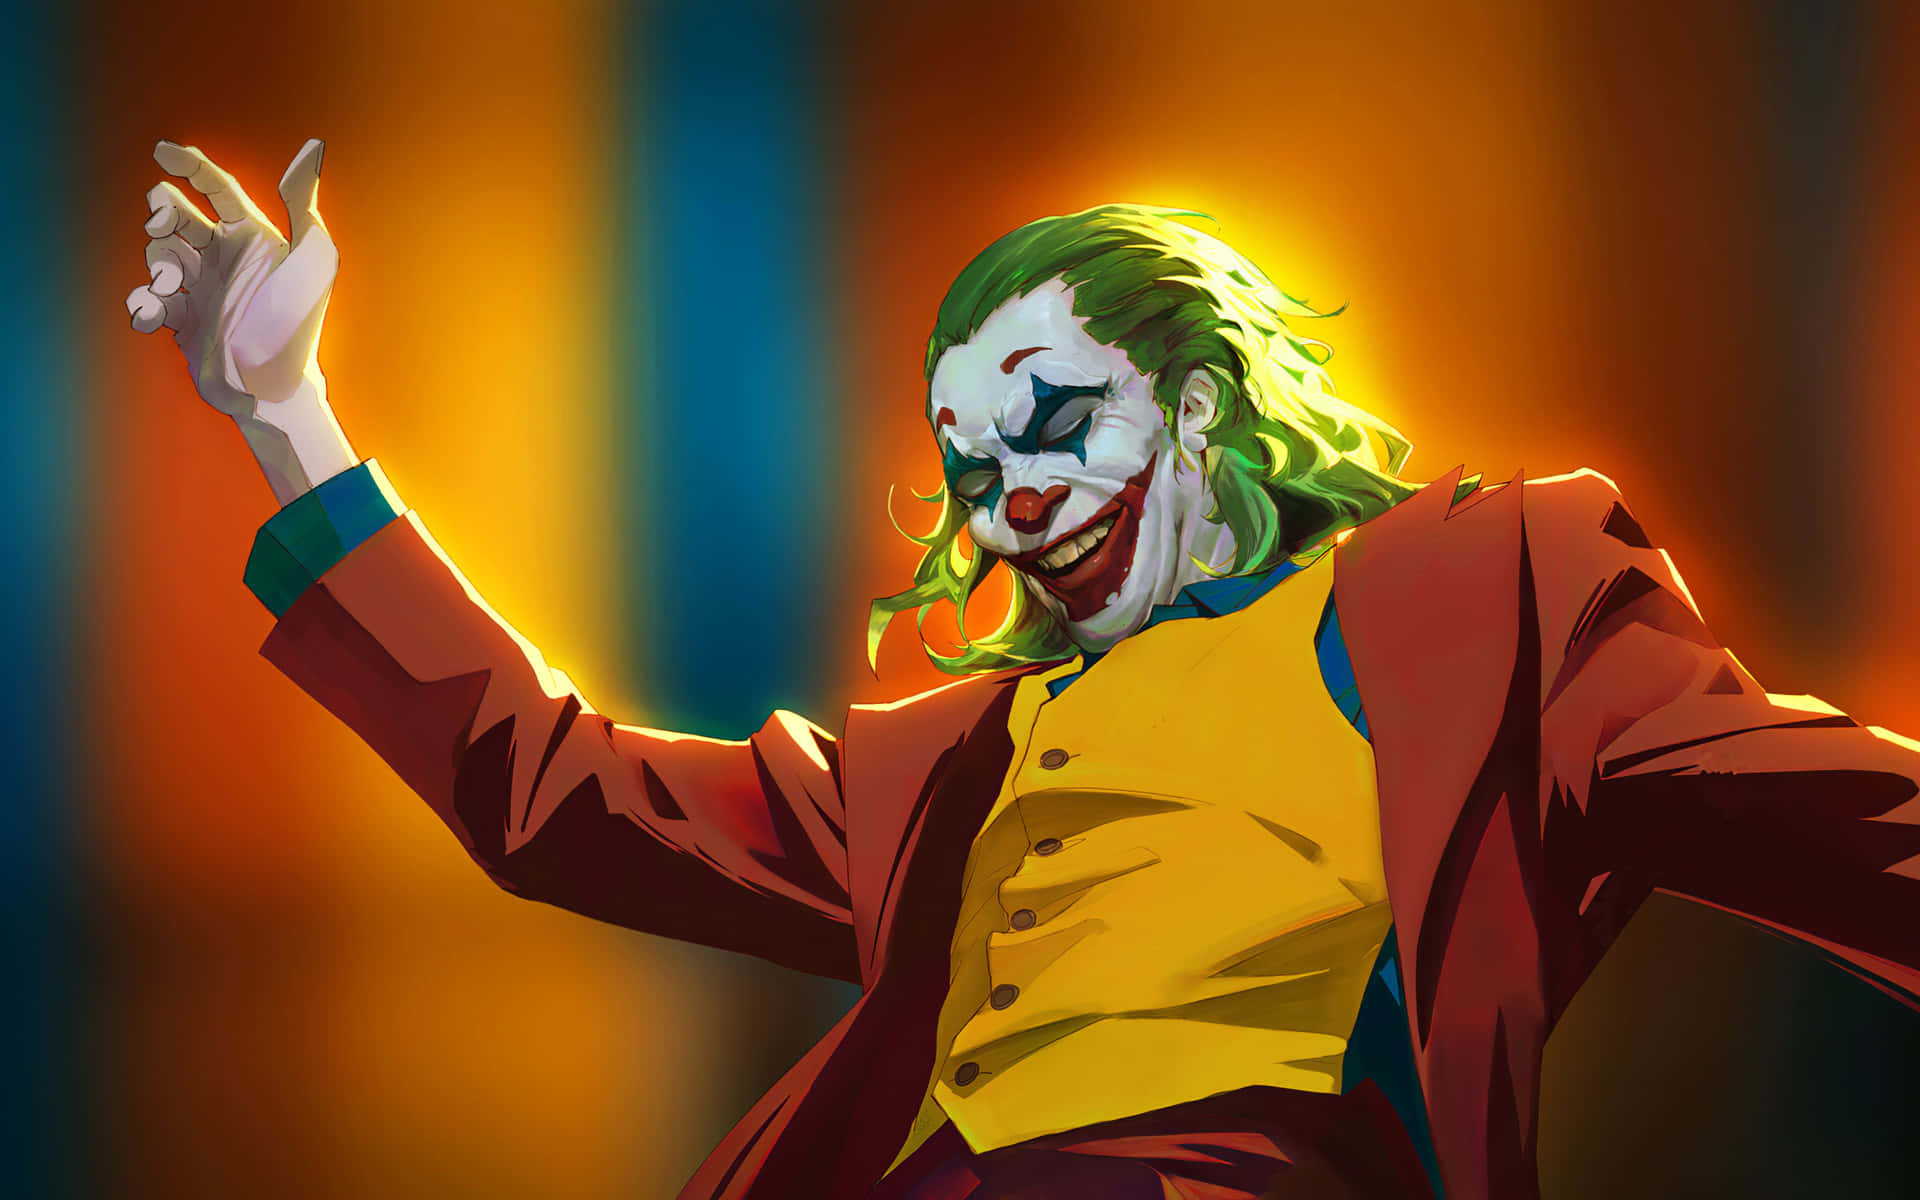 Colorful Dangerous Joker Fan Art Wallpaper